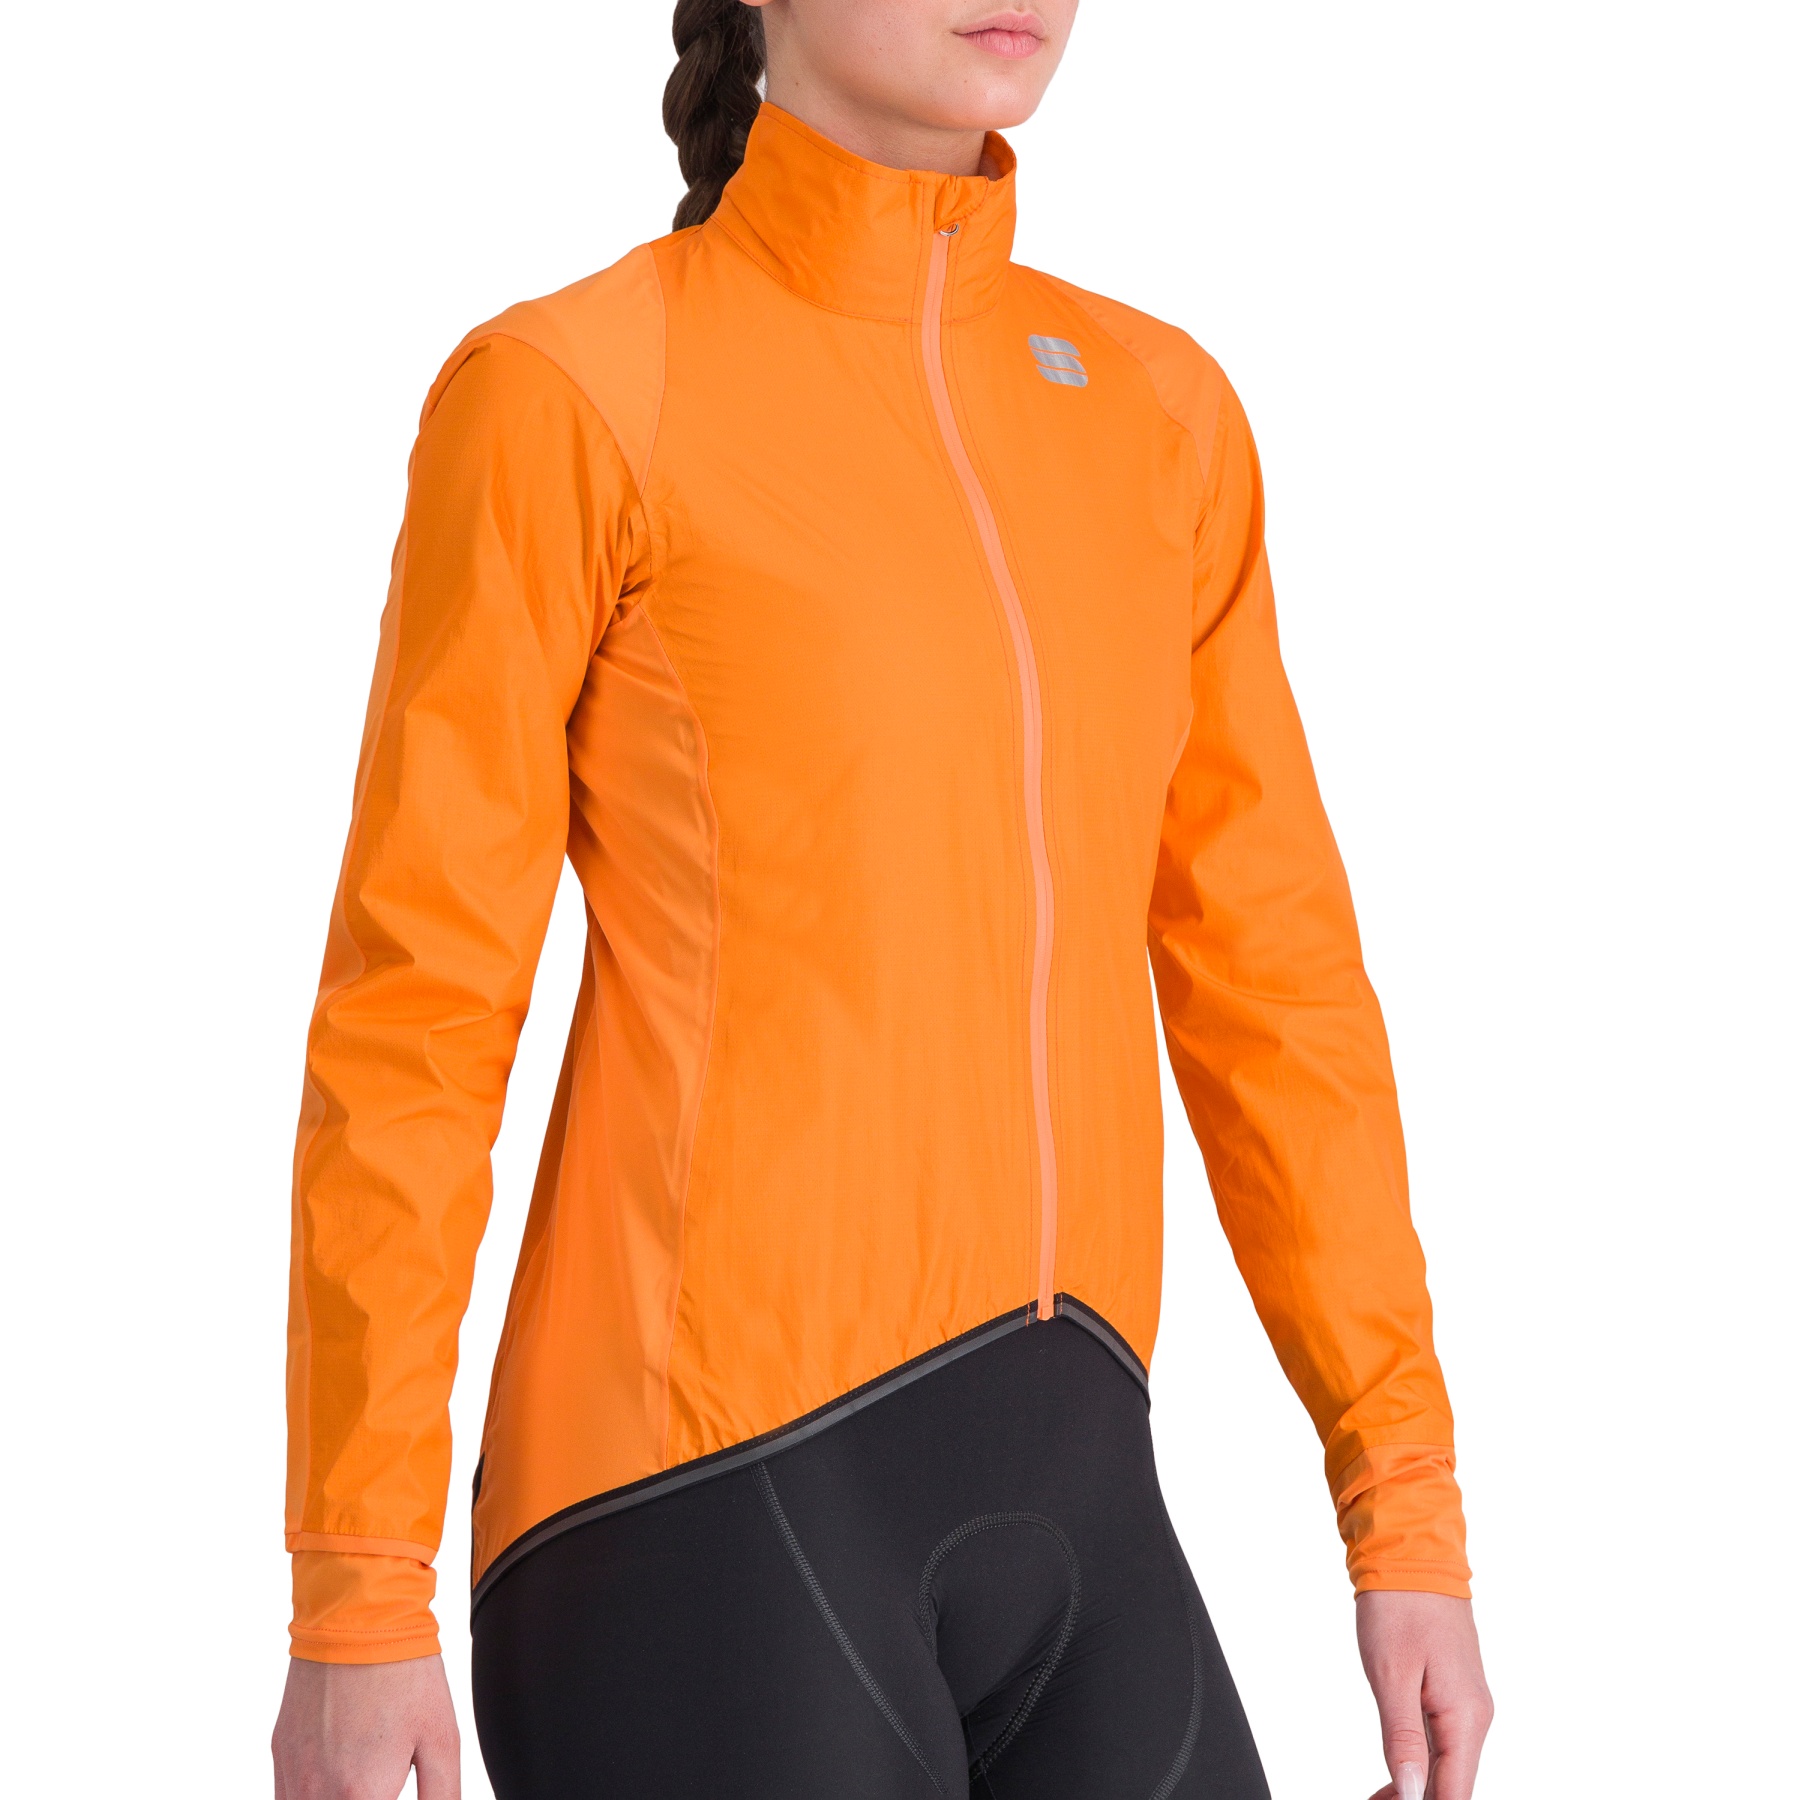 Produktbild von Sportful Hot Pack NoRain Jacke Damen - 850 Orange SDR